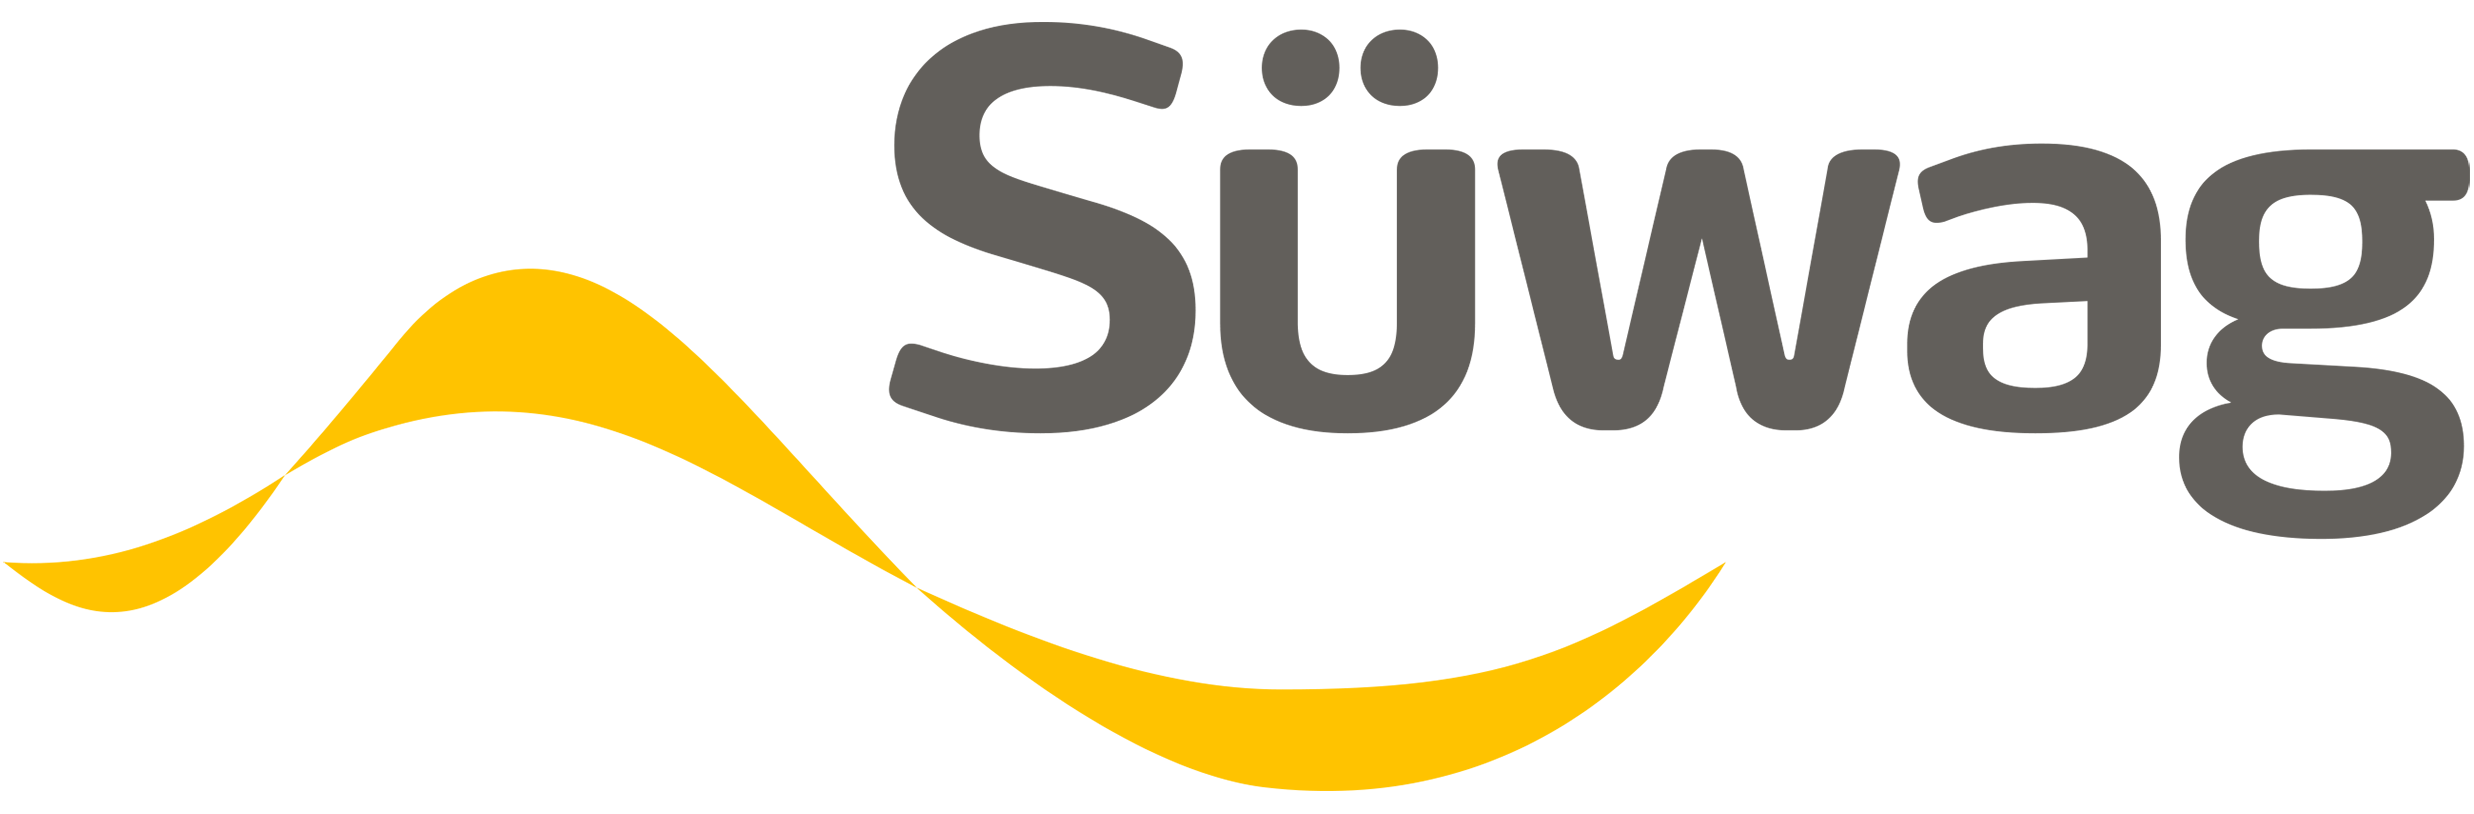 suewag-logo